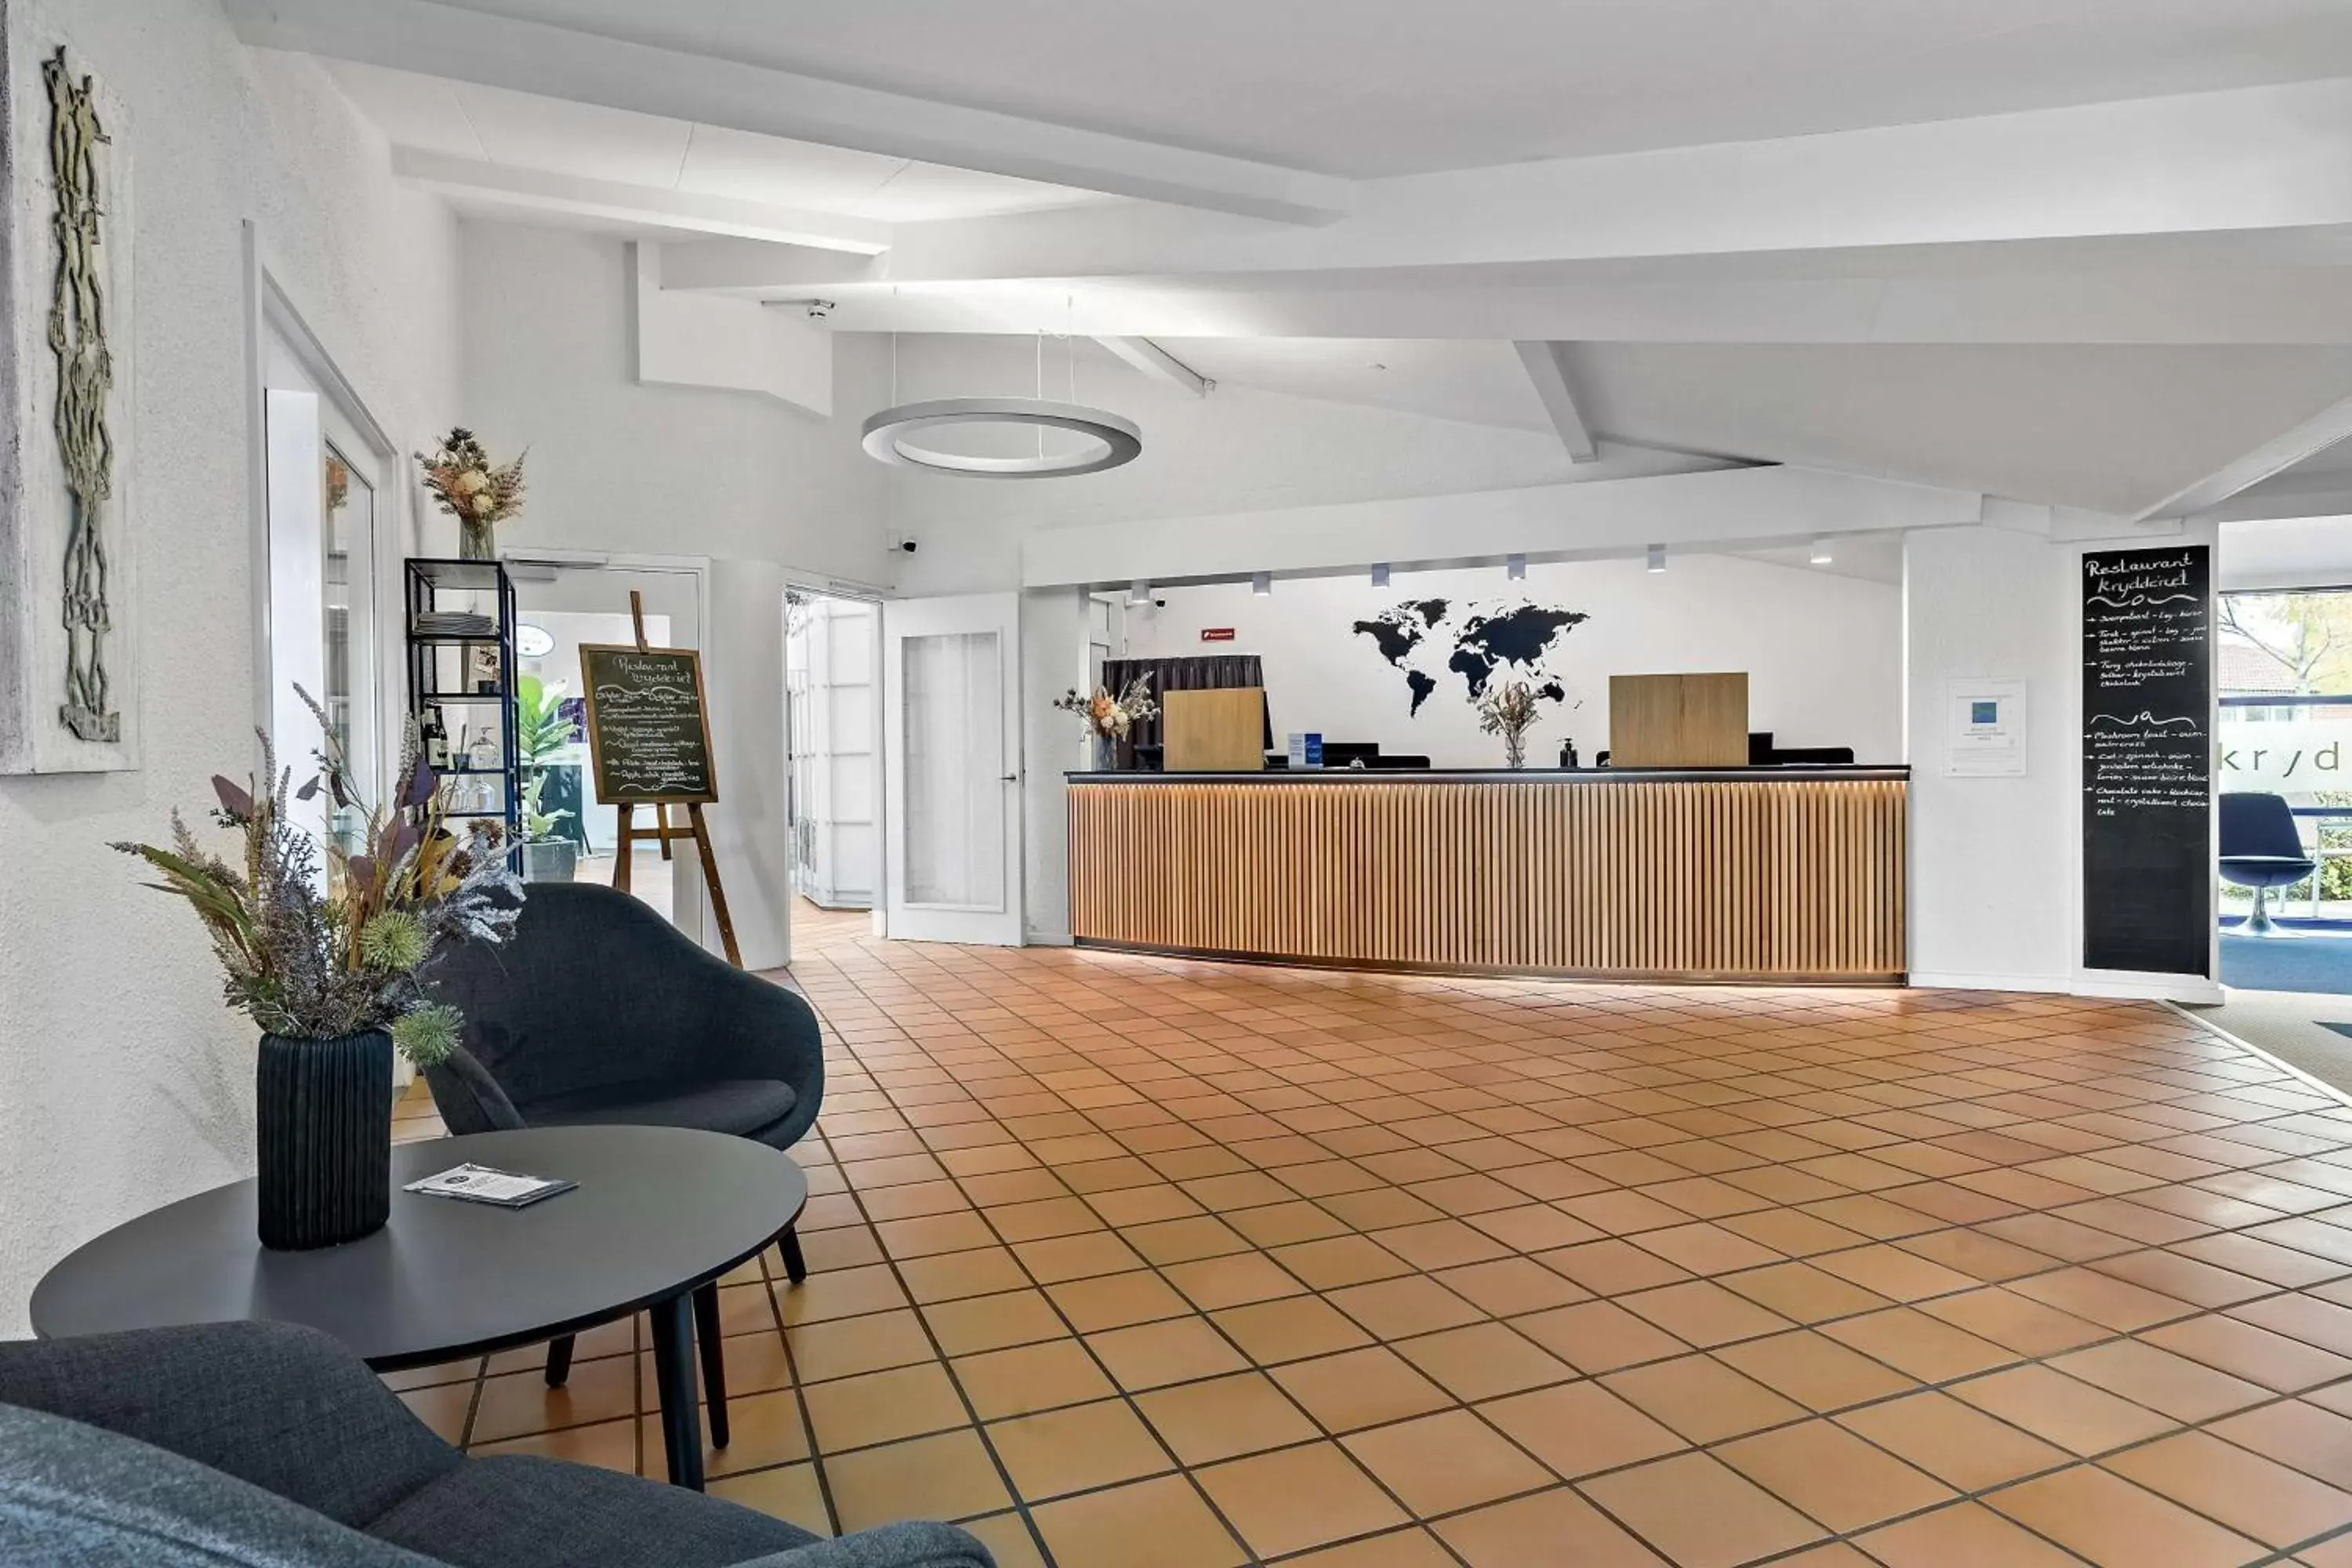 Lobby or reception, Lobby/Reception in Best Western Hotel Hillerød